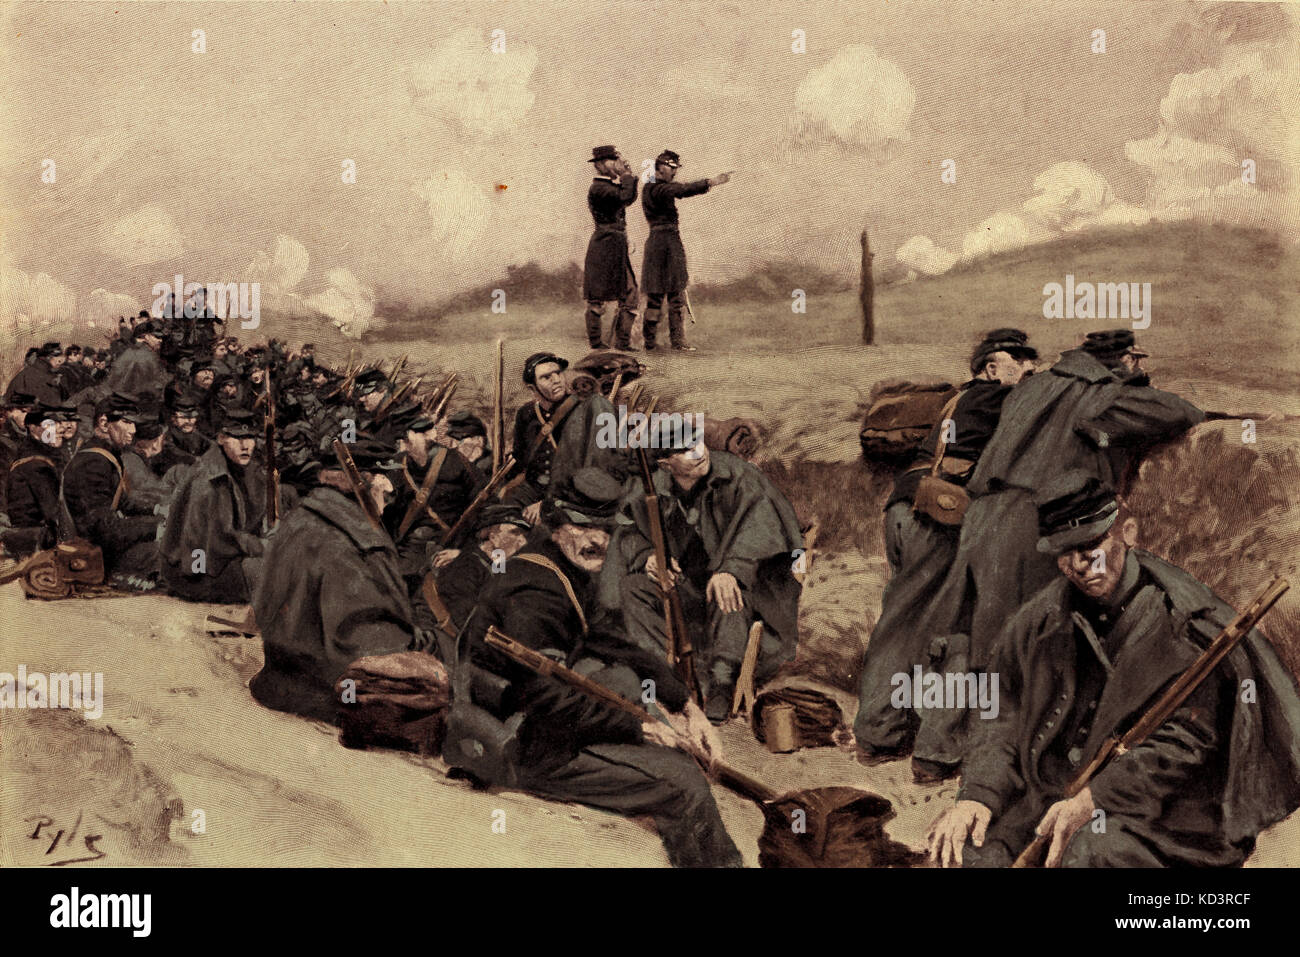 Soldados del ejército federal esperan la orden de cobrar, Guerra Civil Americana 1861 - 1865. Ilustración de Howard Pyle, 1909 Foto de stock